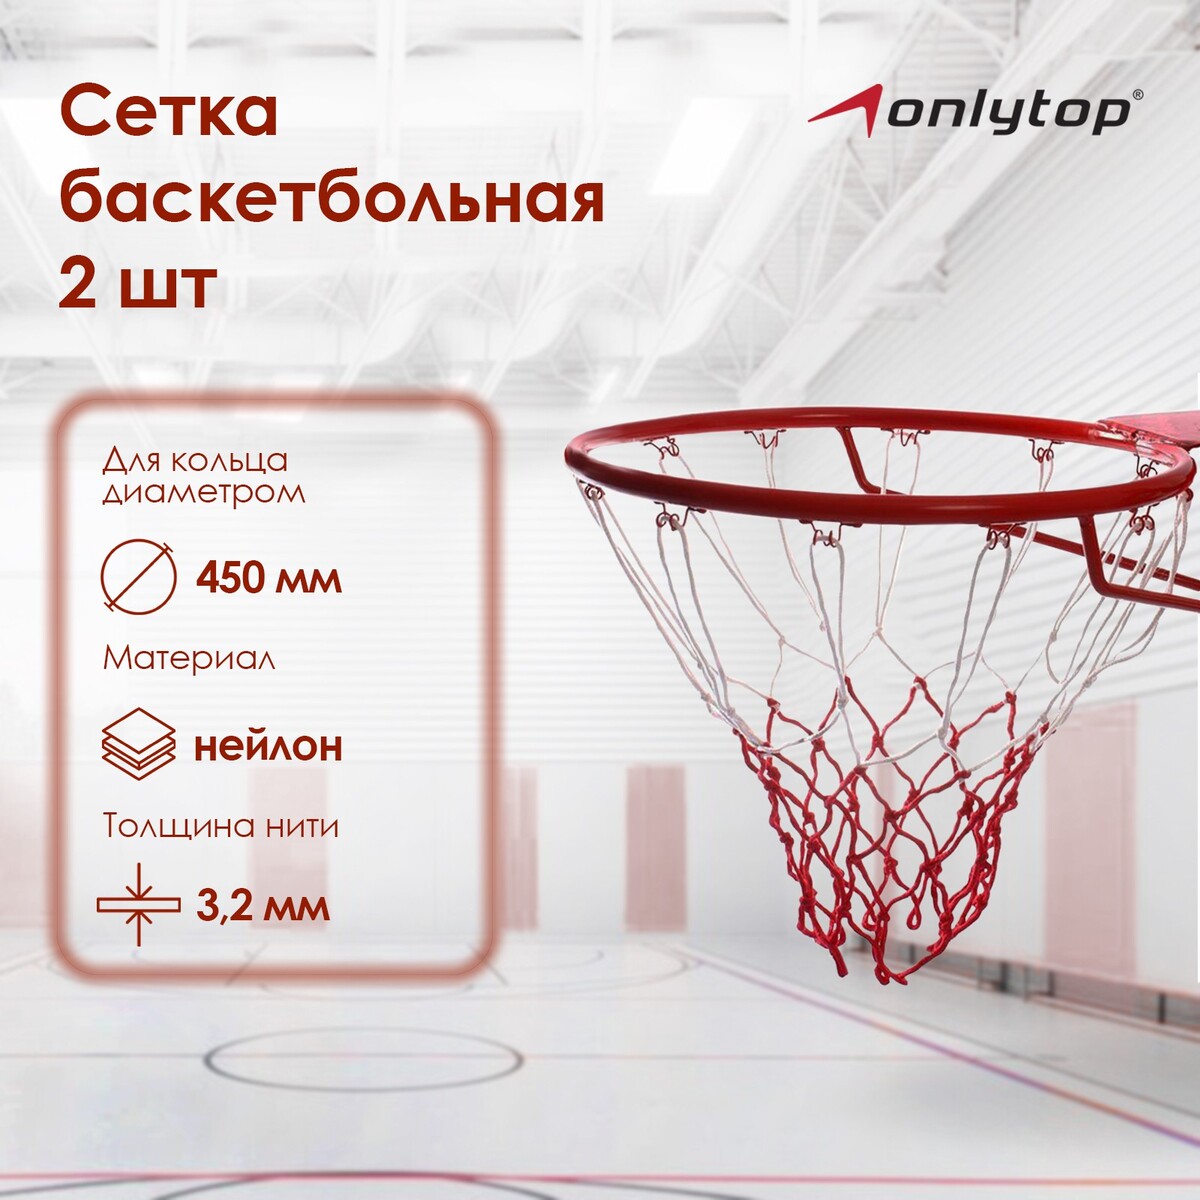 фото Сетка баскетбольная onlytop, 50 см, нить 3,2 мм, 2 шт.